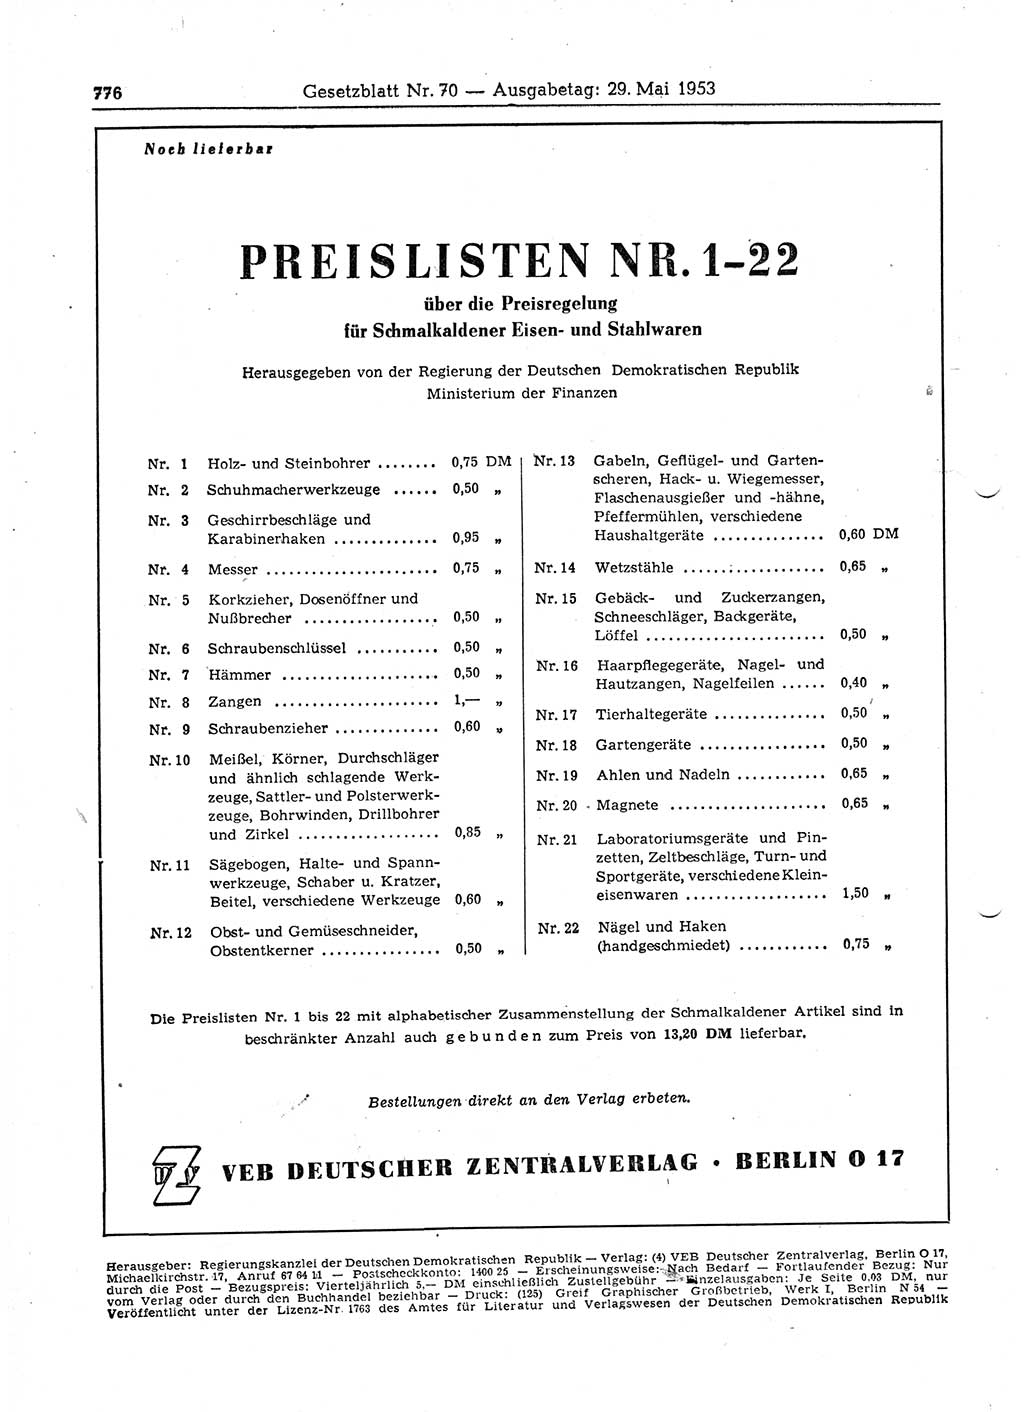 Gesetzblatt (GBl.) der Deutschen Demokratischen Republik (DDR) 1953, Seite 776 (GBl. DDR 1953, S. 776)